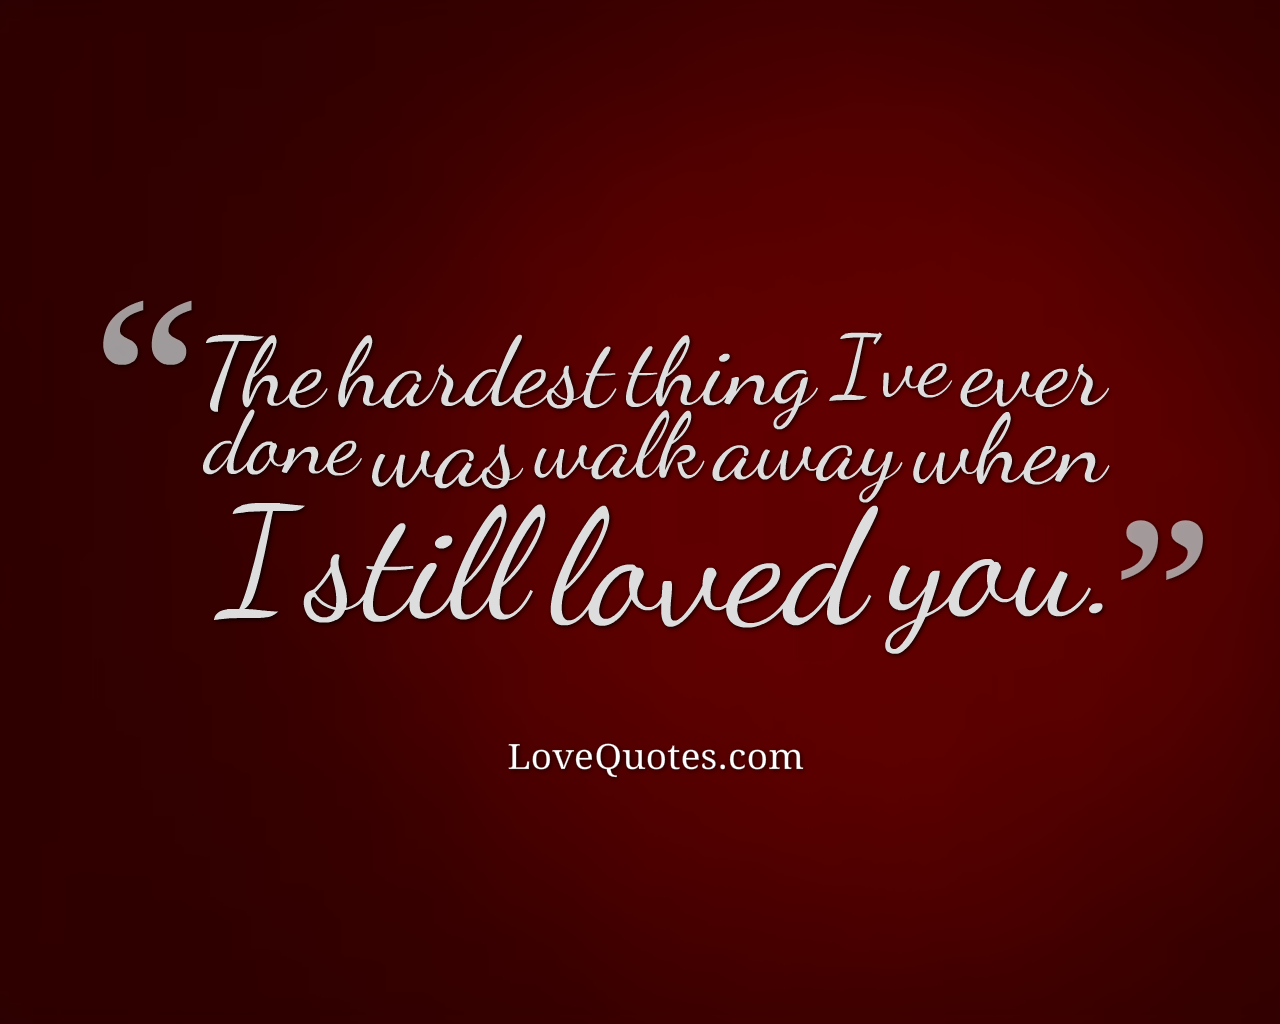 I Still Loved You